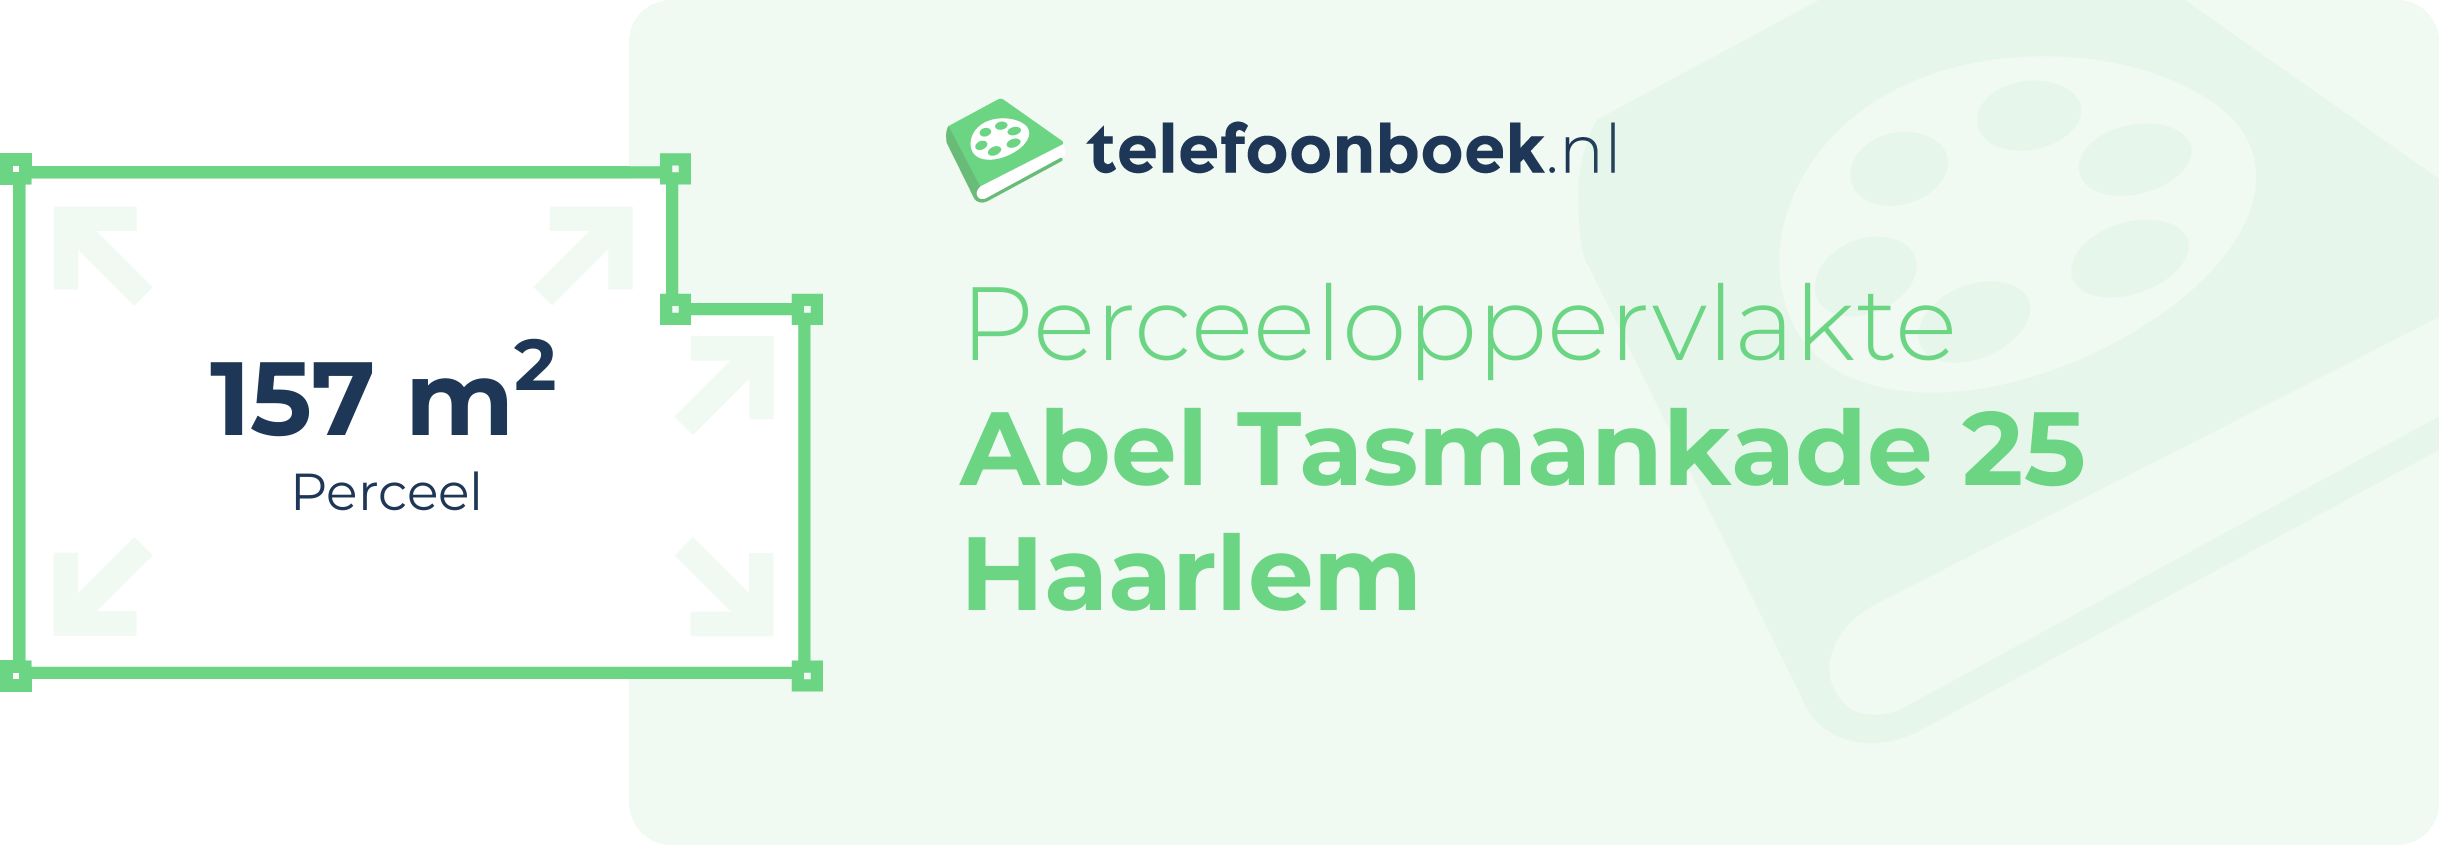 Perceeloppervlakte Abel Tasmankade 25 Haarlem